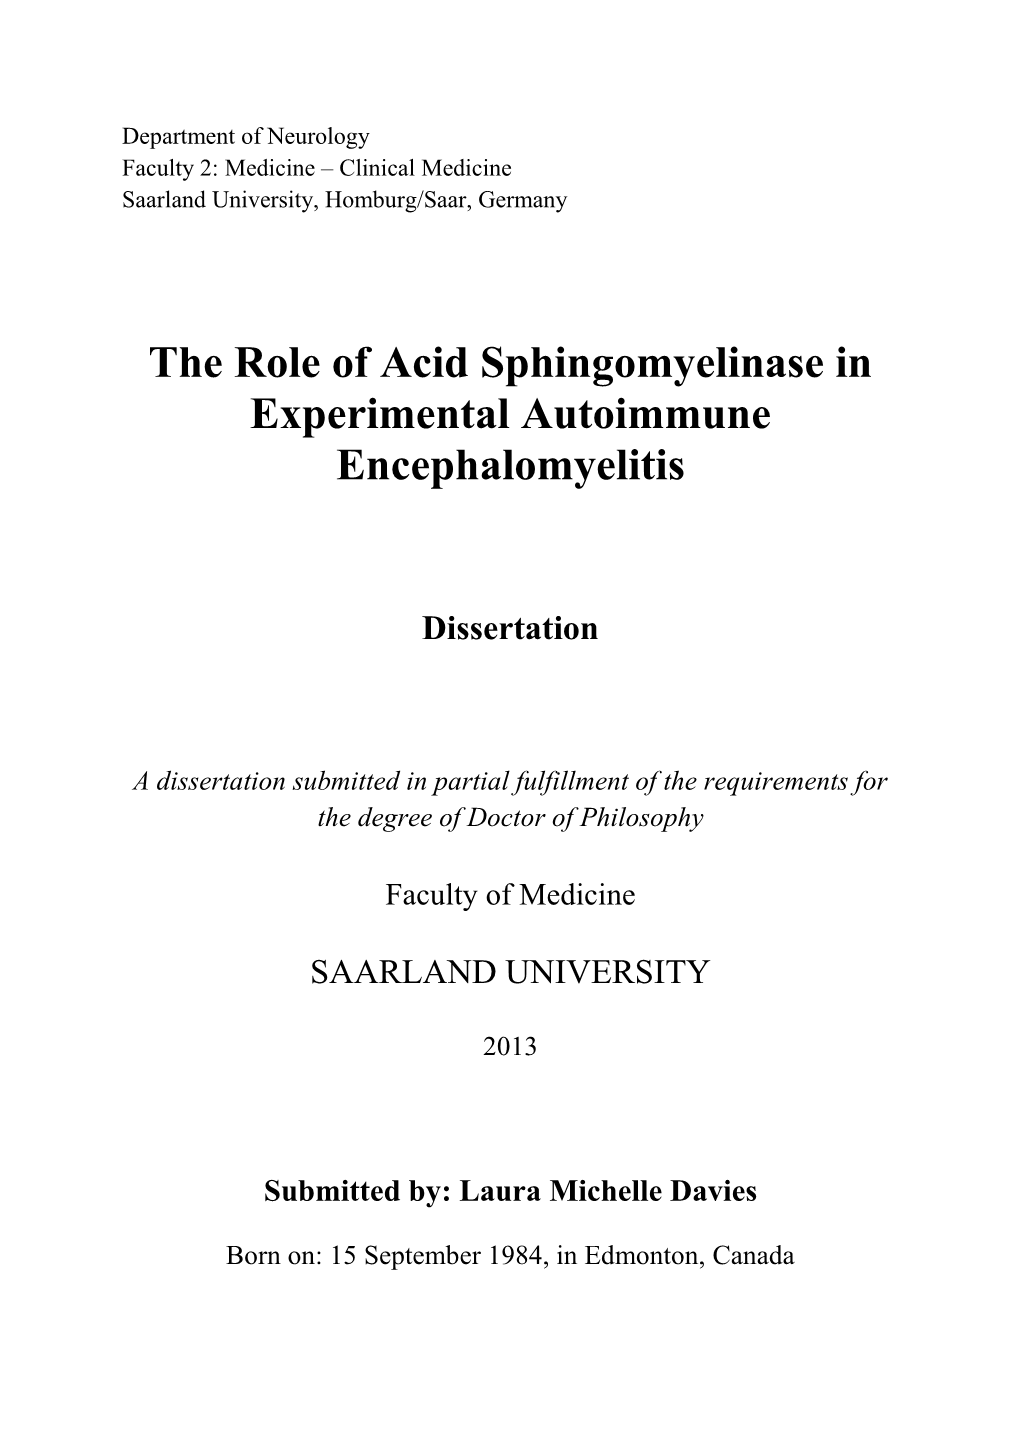 The Role of Acid Sphingomyelinase in Experimental Autoimmune Encephalomyelitis